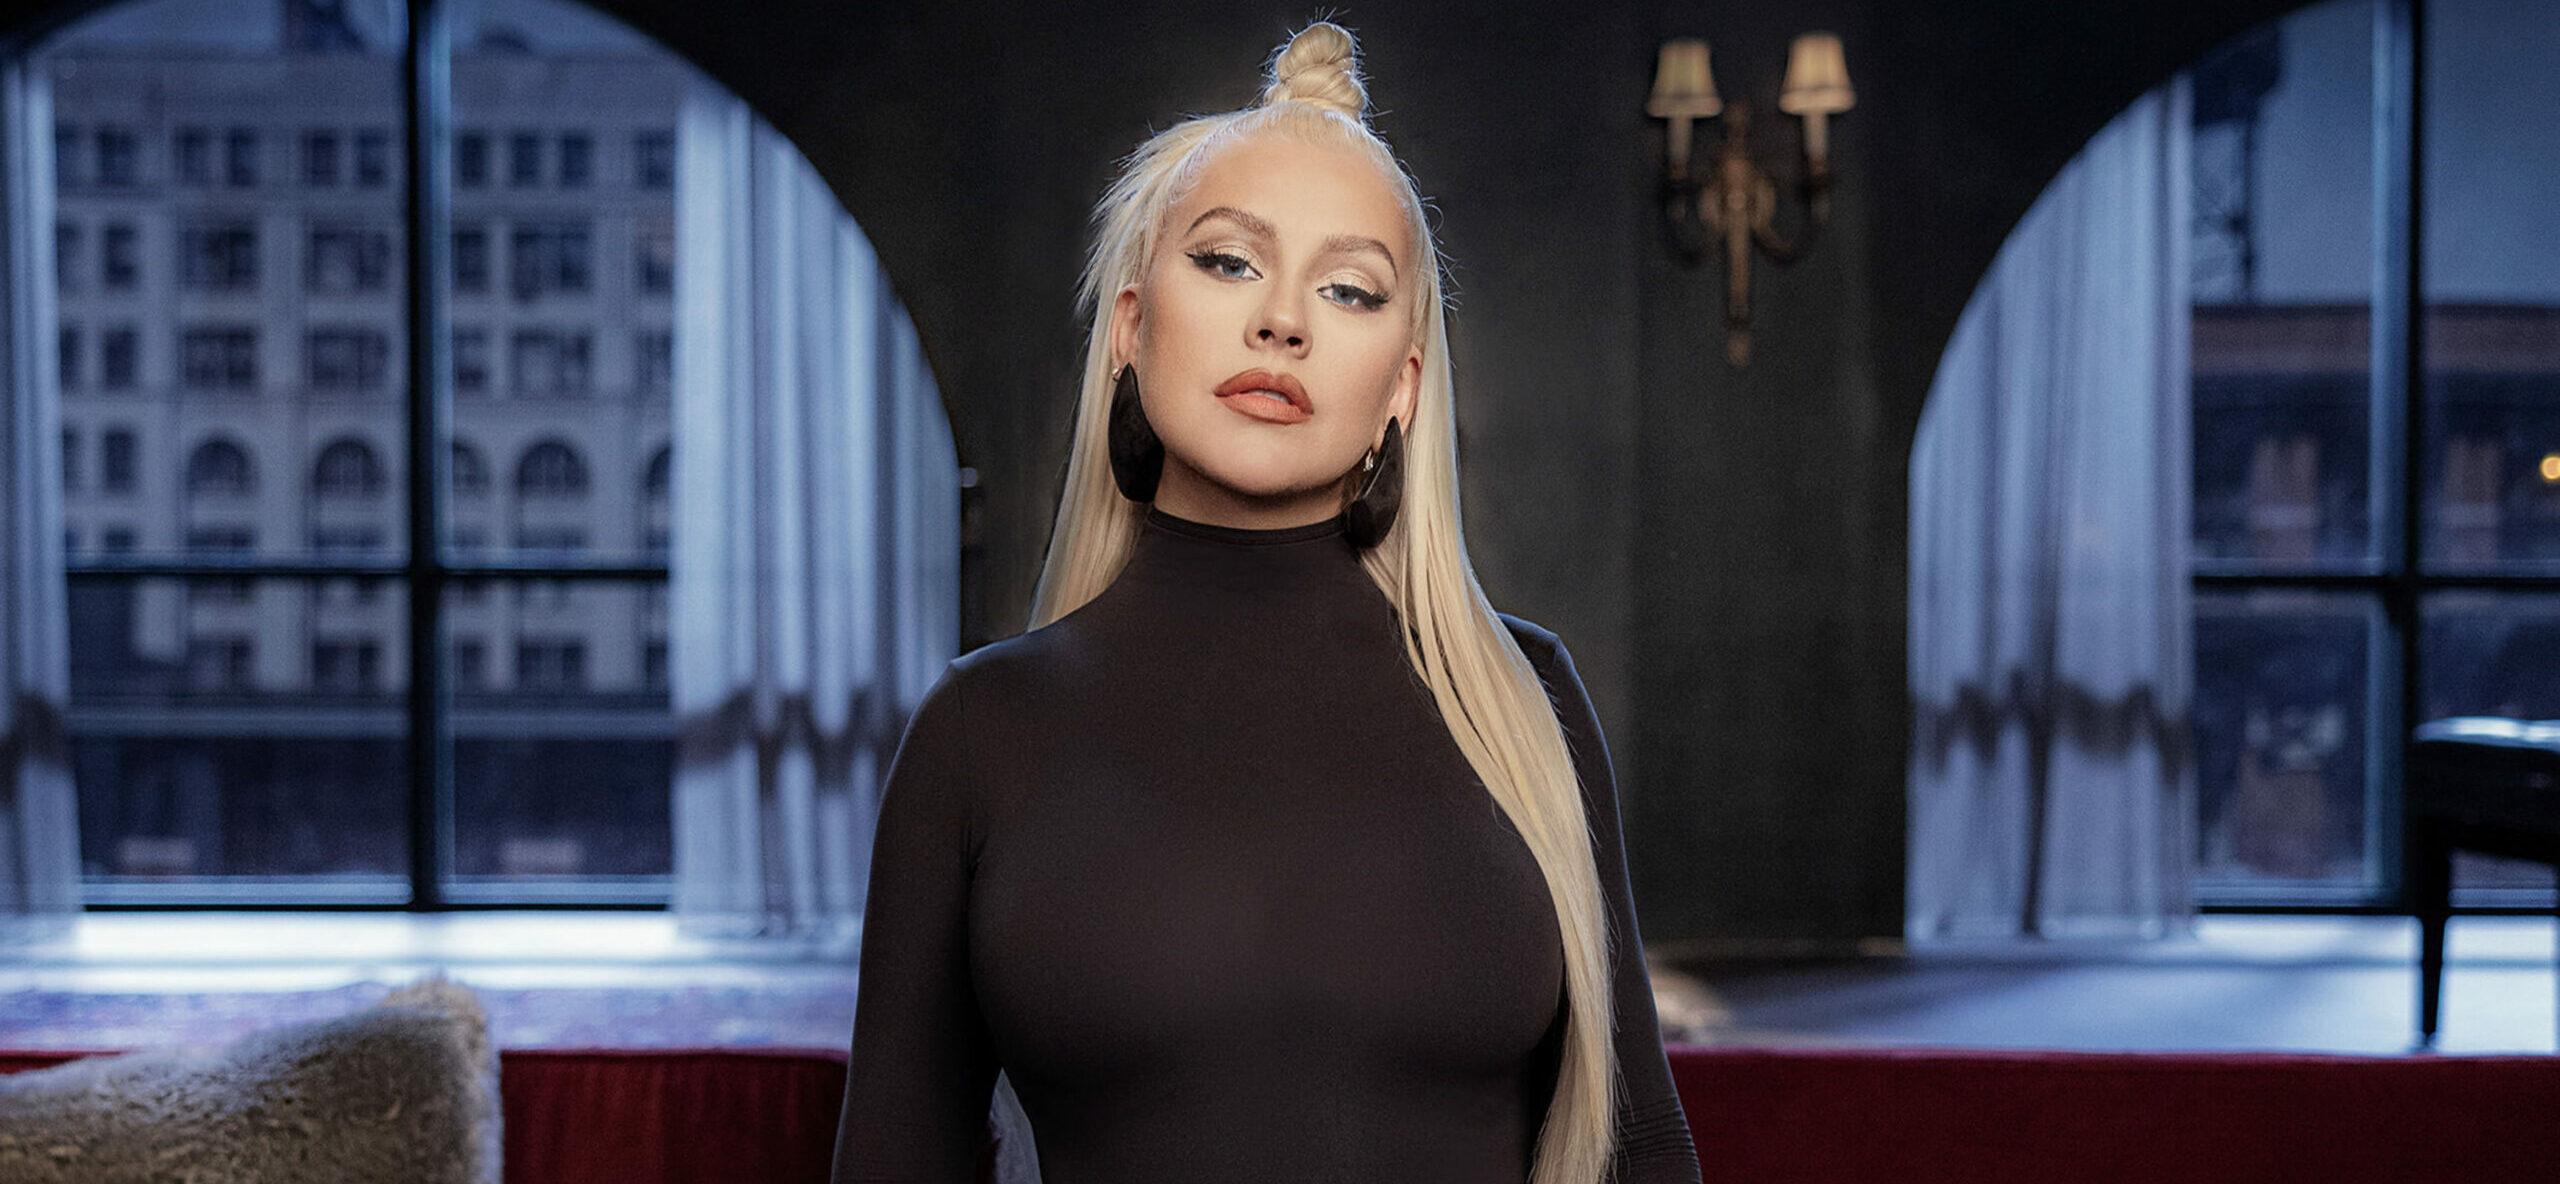 Christina Aguilera Re-Purposes ‘Beautiful’ Video 20 Years Later, Brings Awareness To Social Media